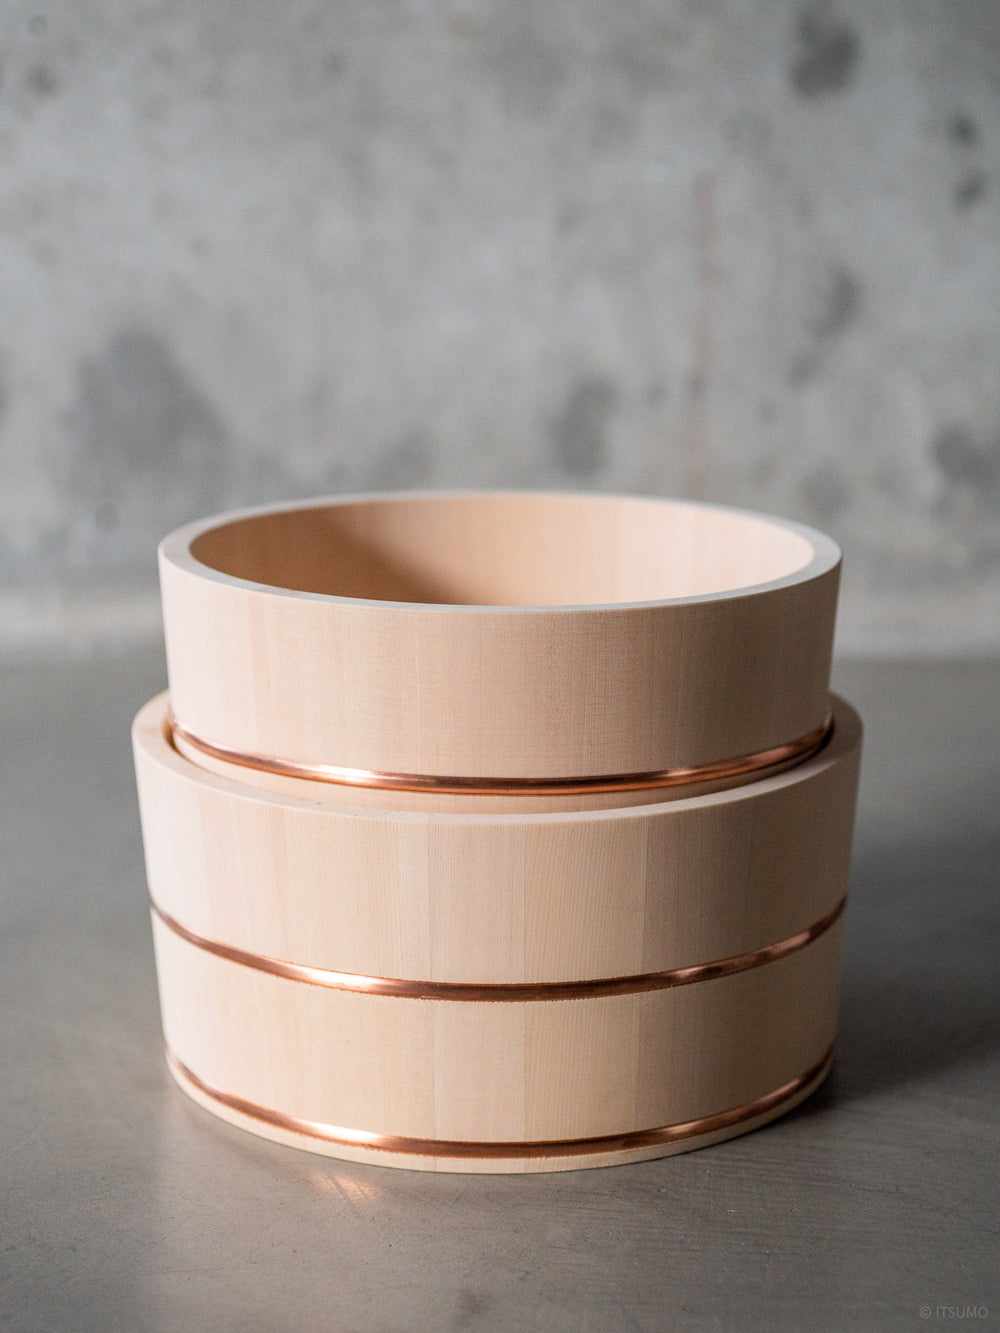 Two Azmaya hinoki wood bath bowls with copper trim